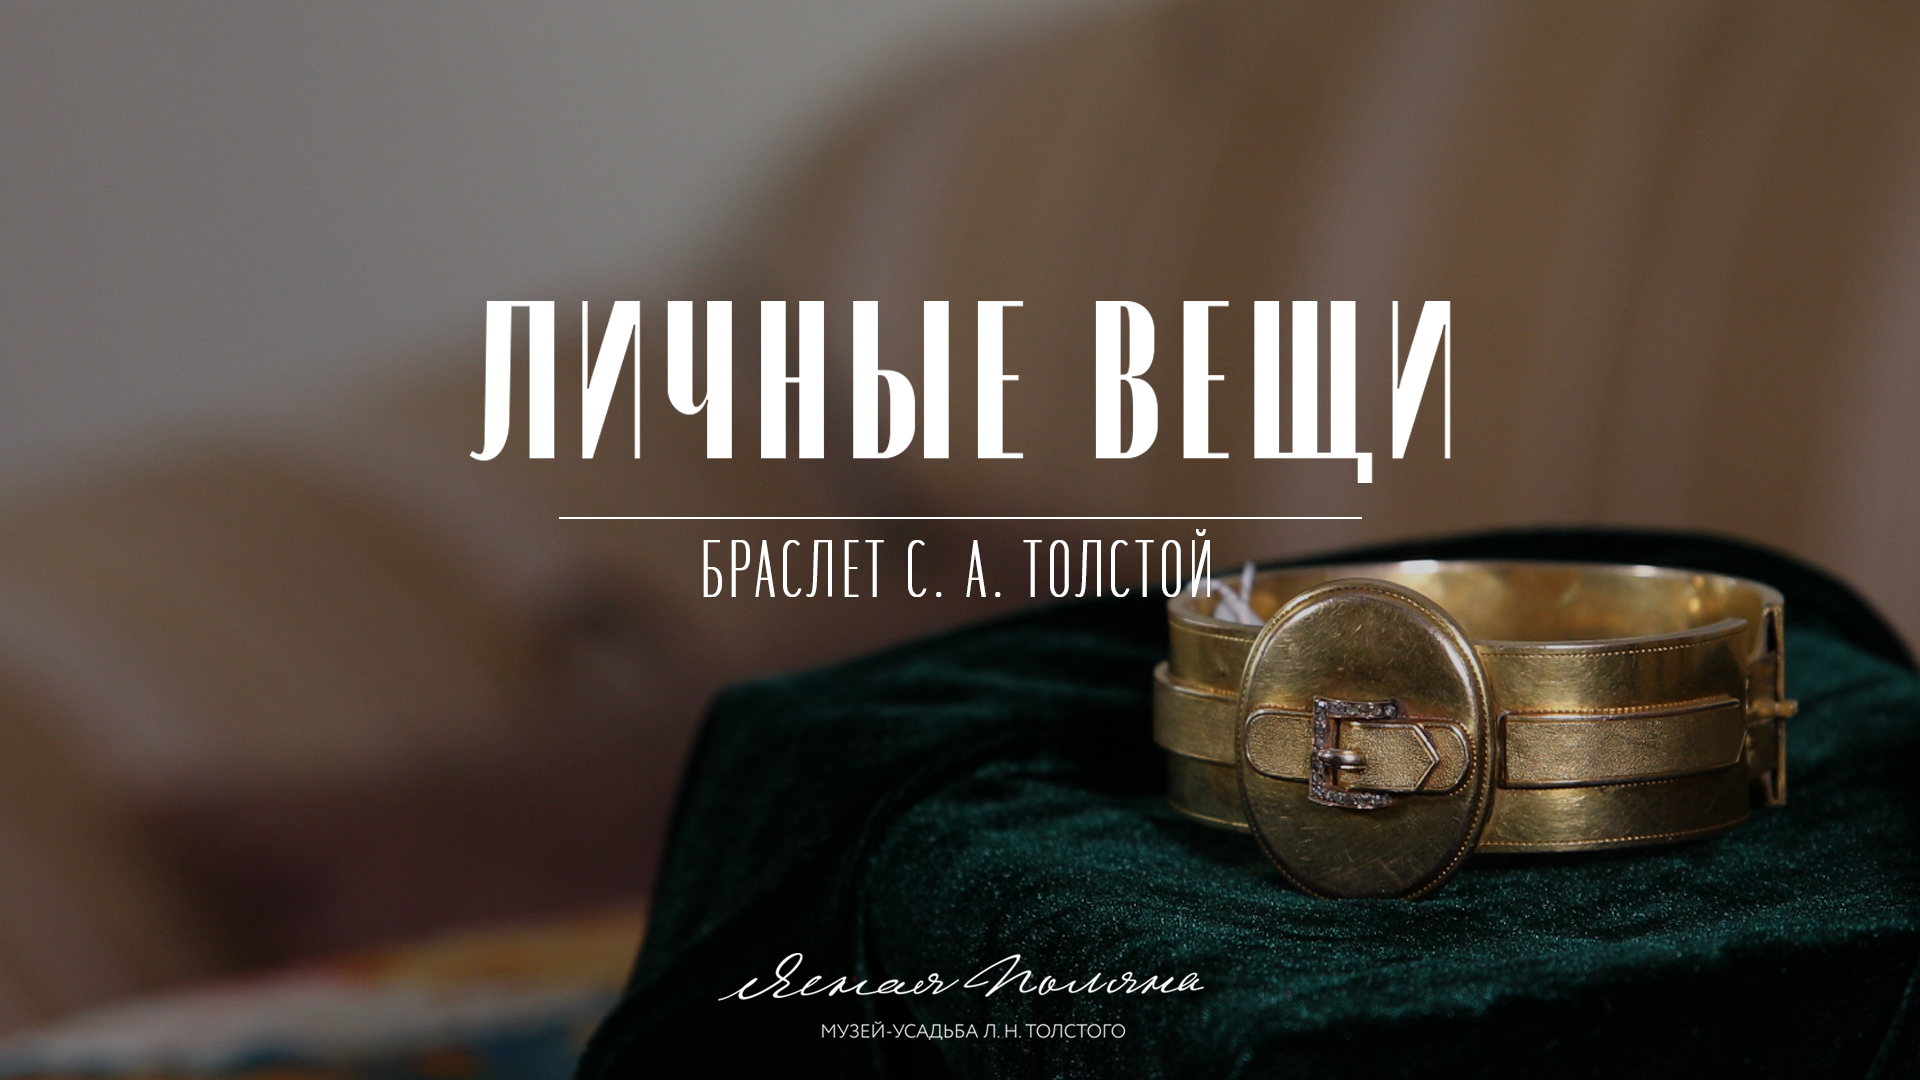 Браслет С. А. Толстой. Личные вещи | Ясная Поляна